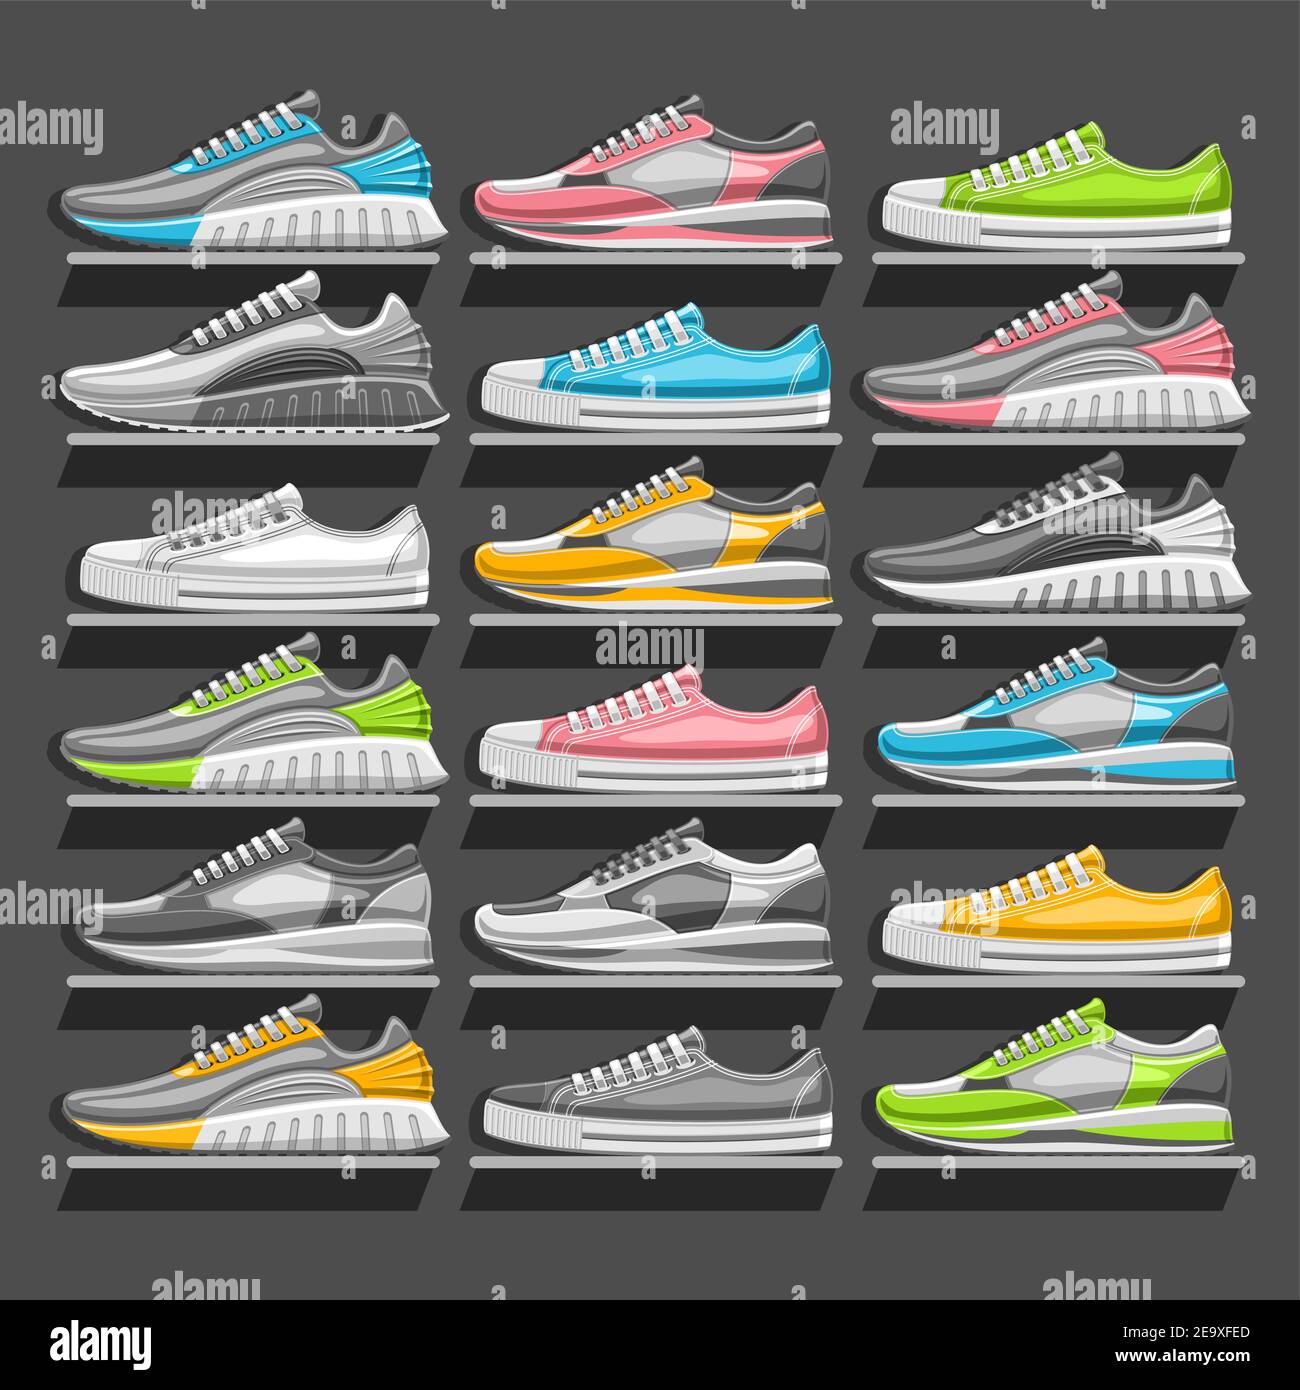 Vector Sneakers Set, 18 illustrazioni ritagliate di varie sneakers multicolore, in bianco e nero e stile urbano - vista laterale, gruppo di uomini e. Illustrazione Vettoriale